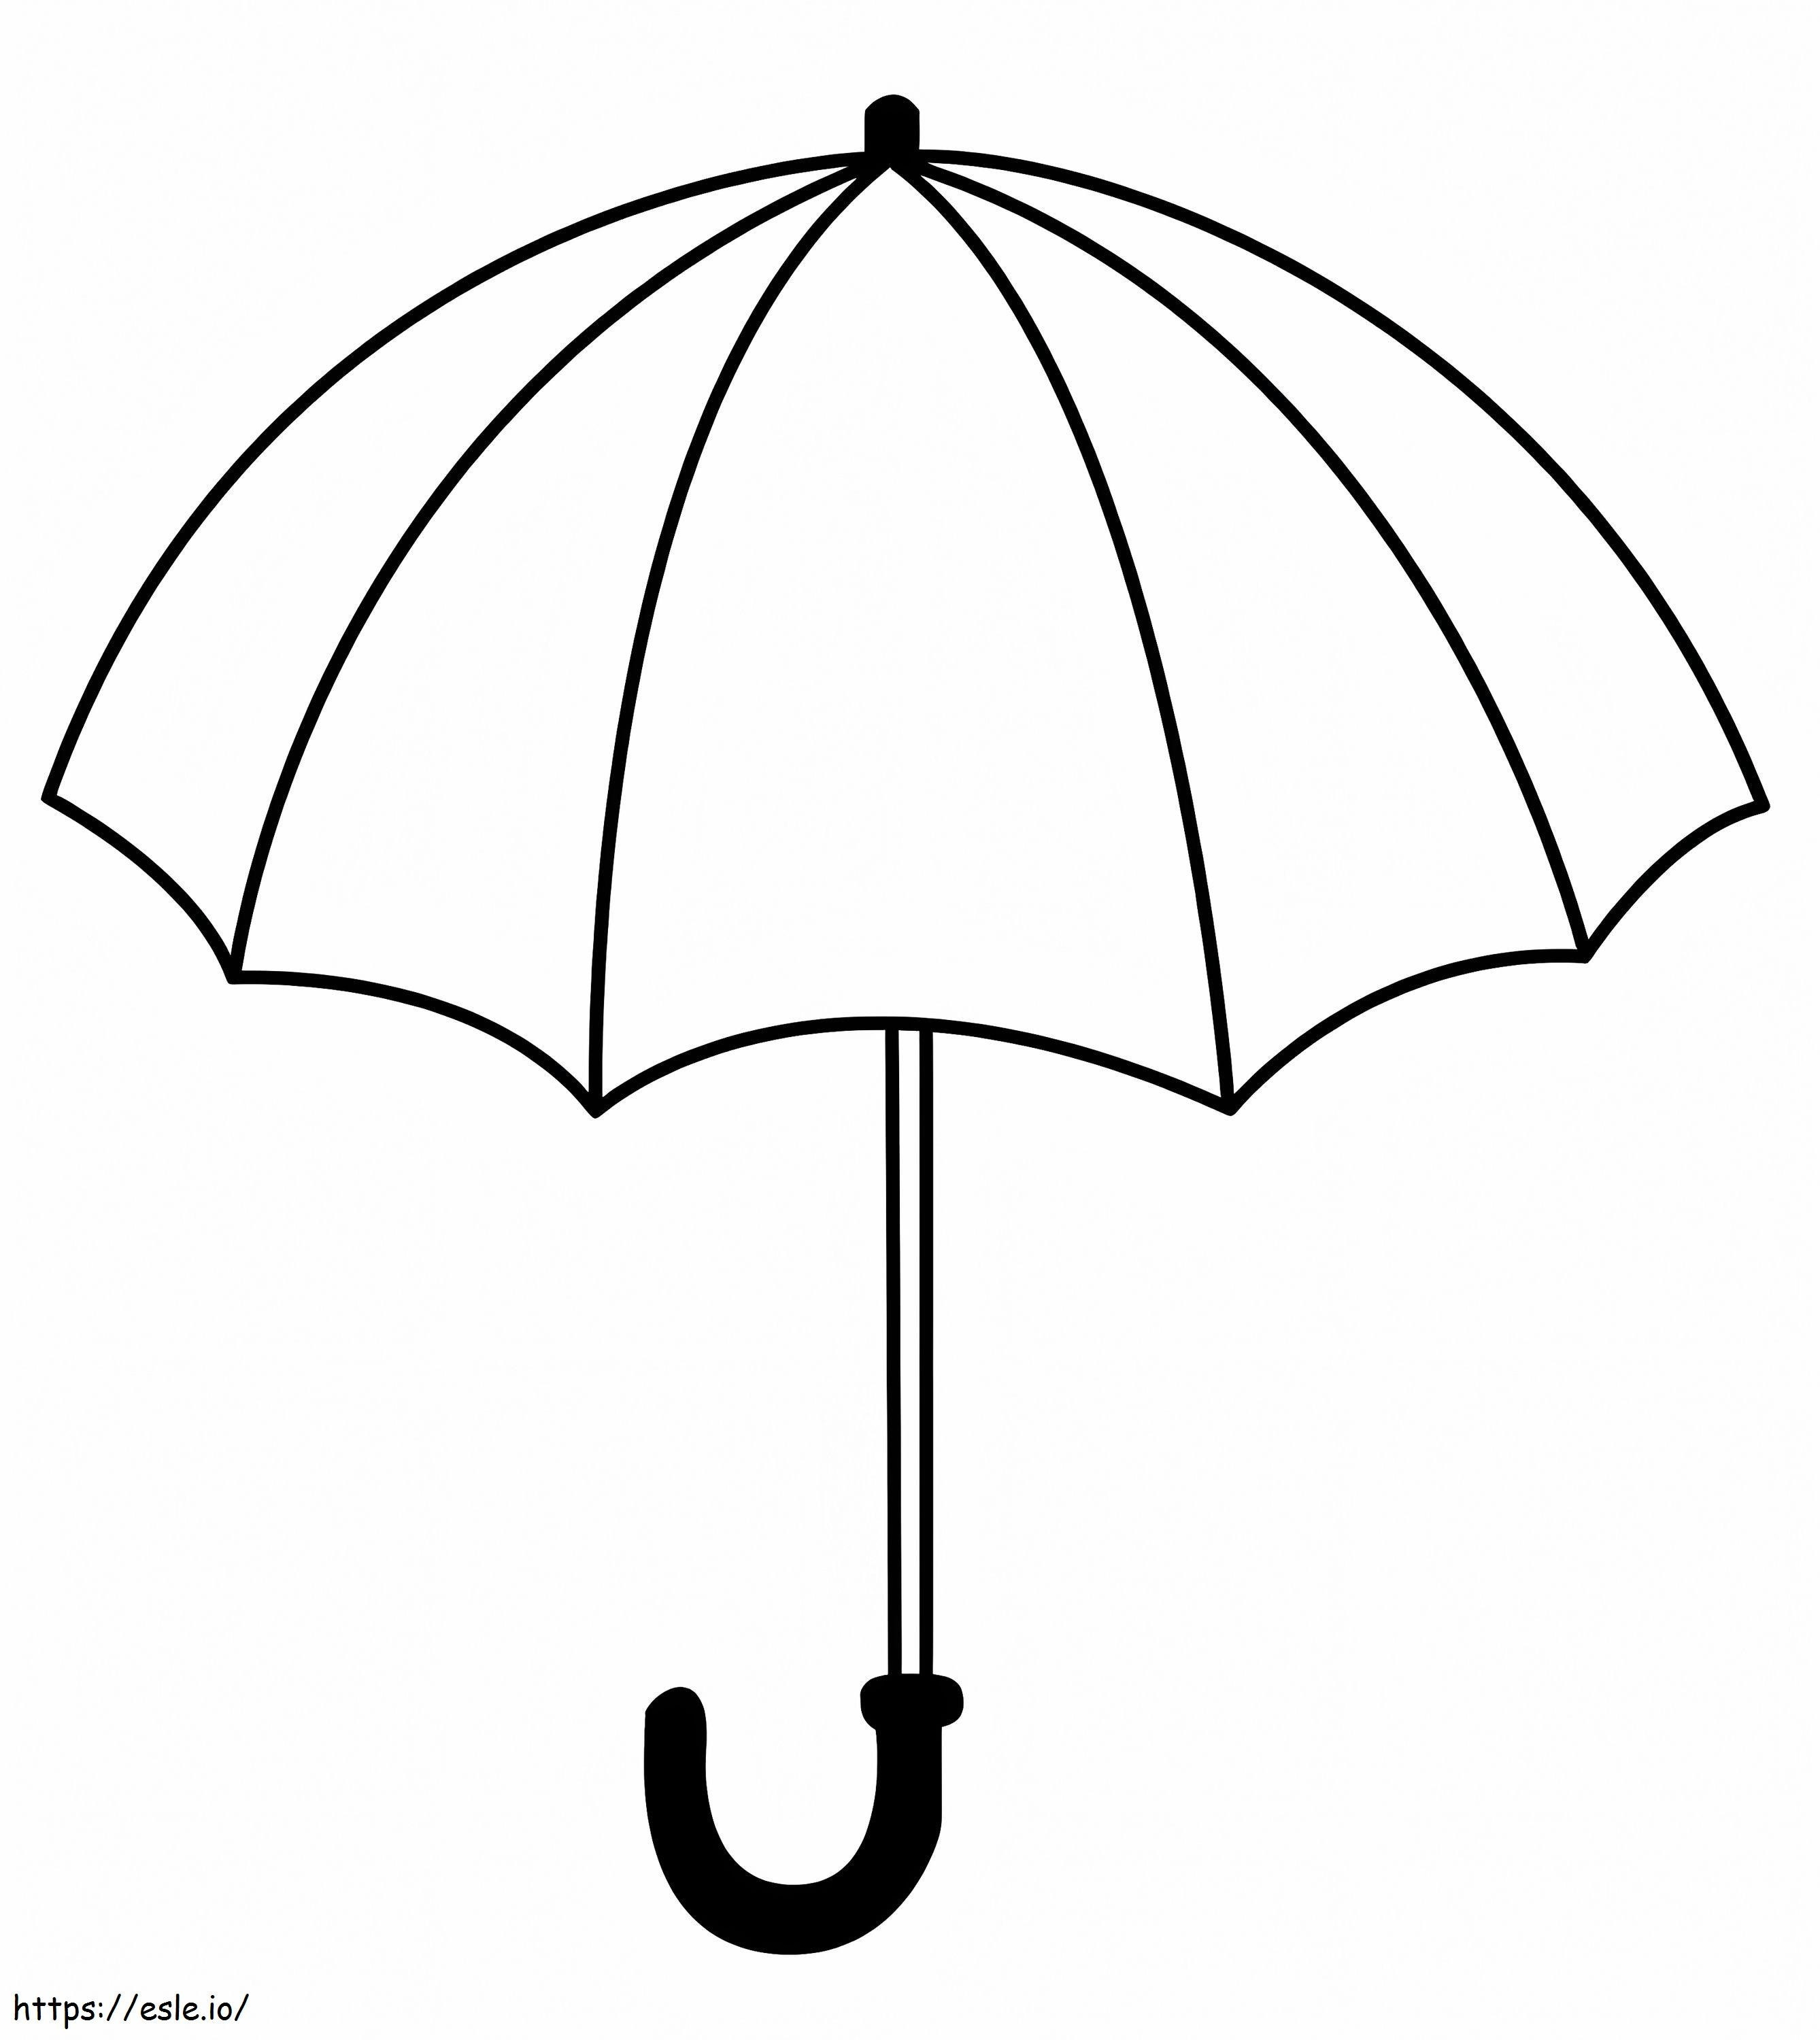 Ein Regenschirm ausmalbilder